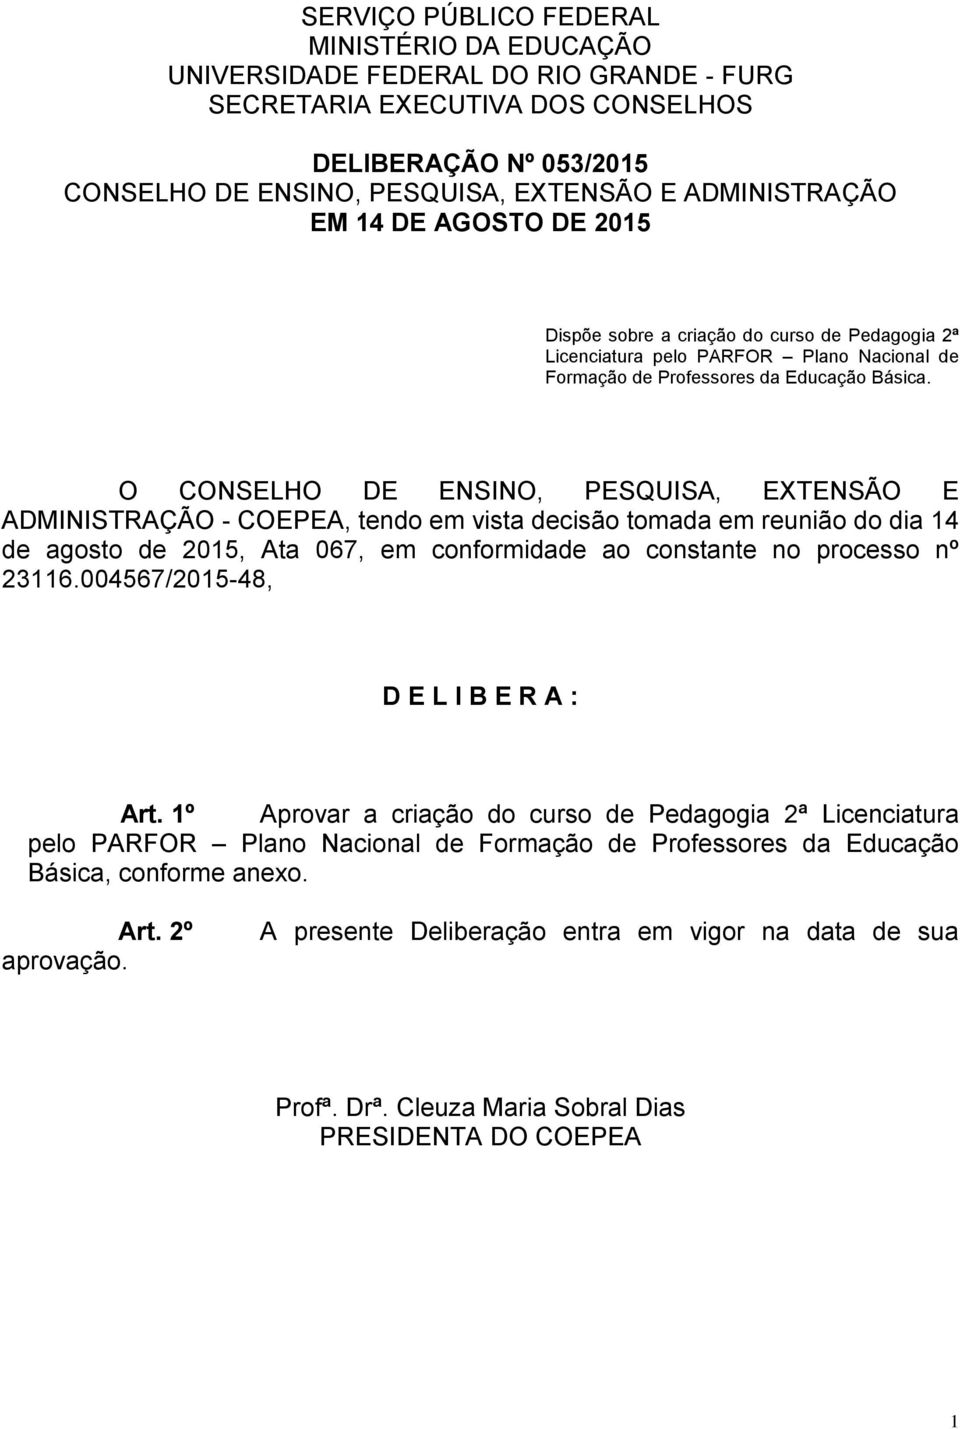 O CONSELHO DE ENSINO, PESQUISA, EXTENSÃO E ADMINISTRAÇÃO - COEPEA, tendo em vista decisão tomada em reunião do dia 14 de agosto de 2015, Ata 067, em conformidade ao constante no processo nº 23116.